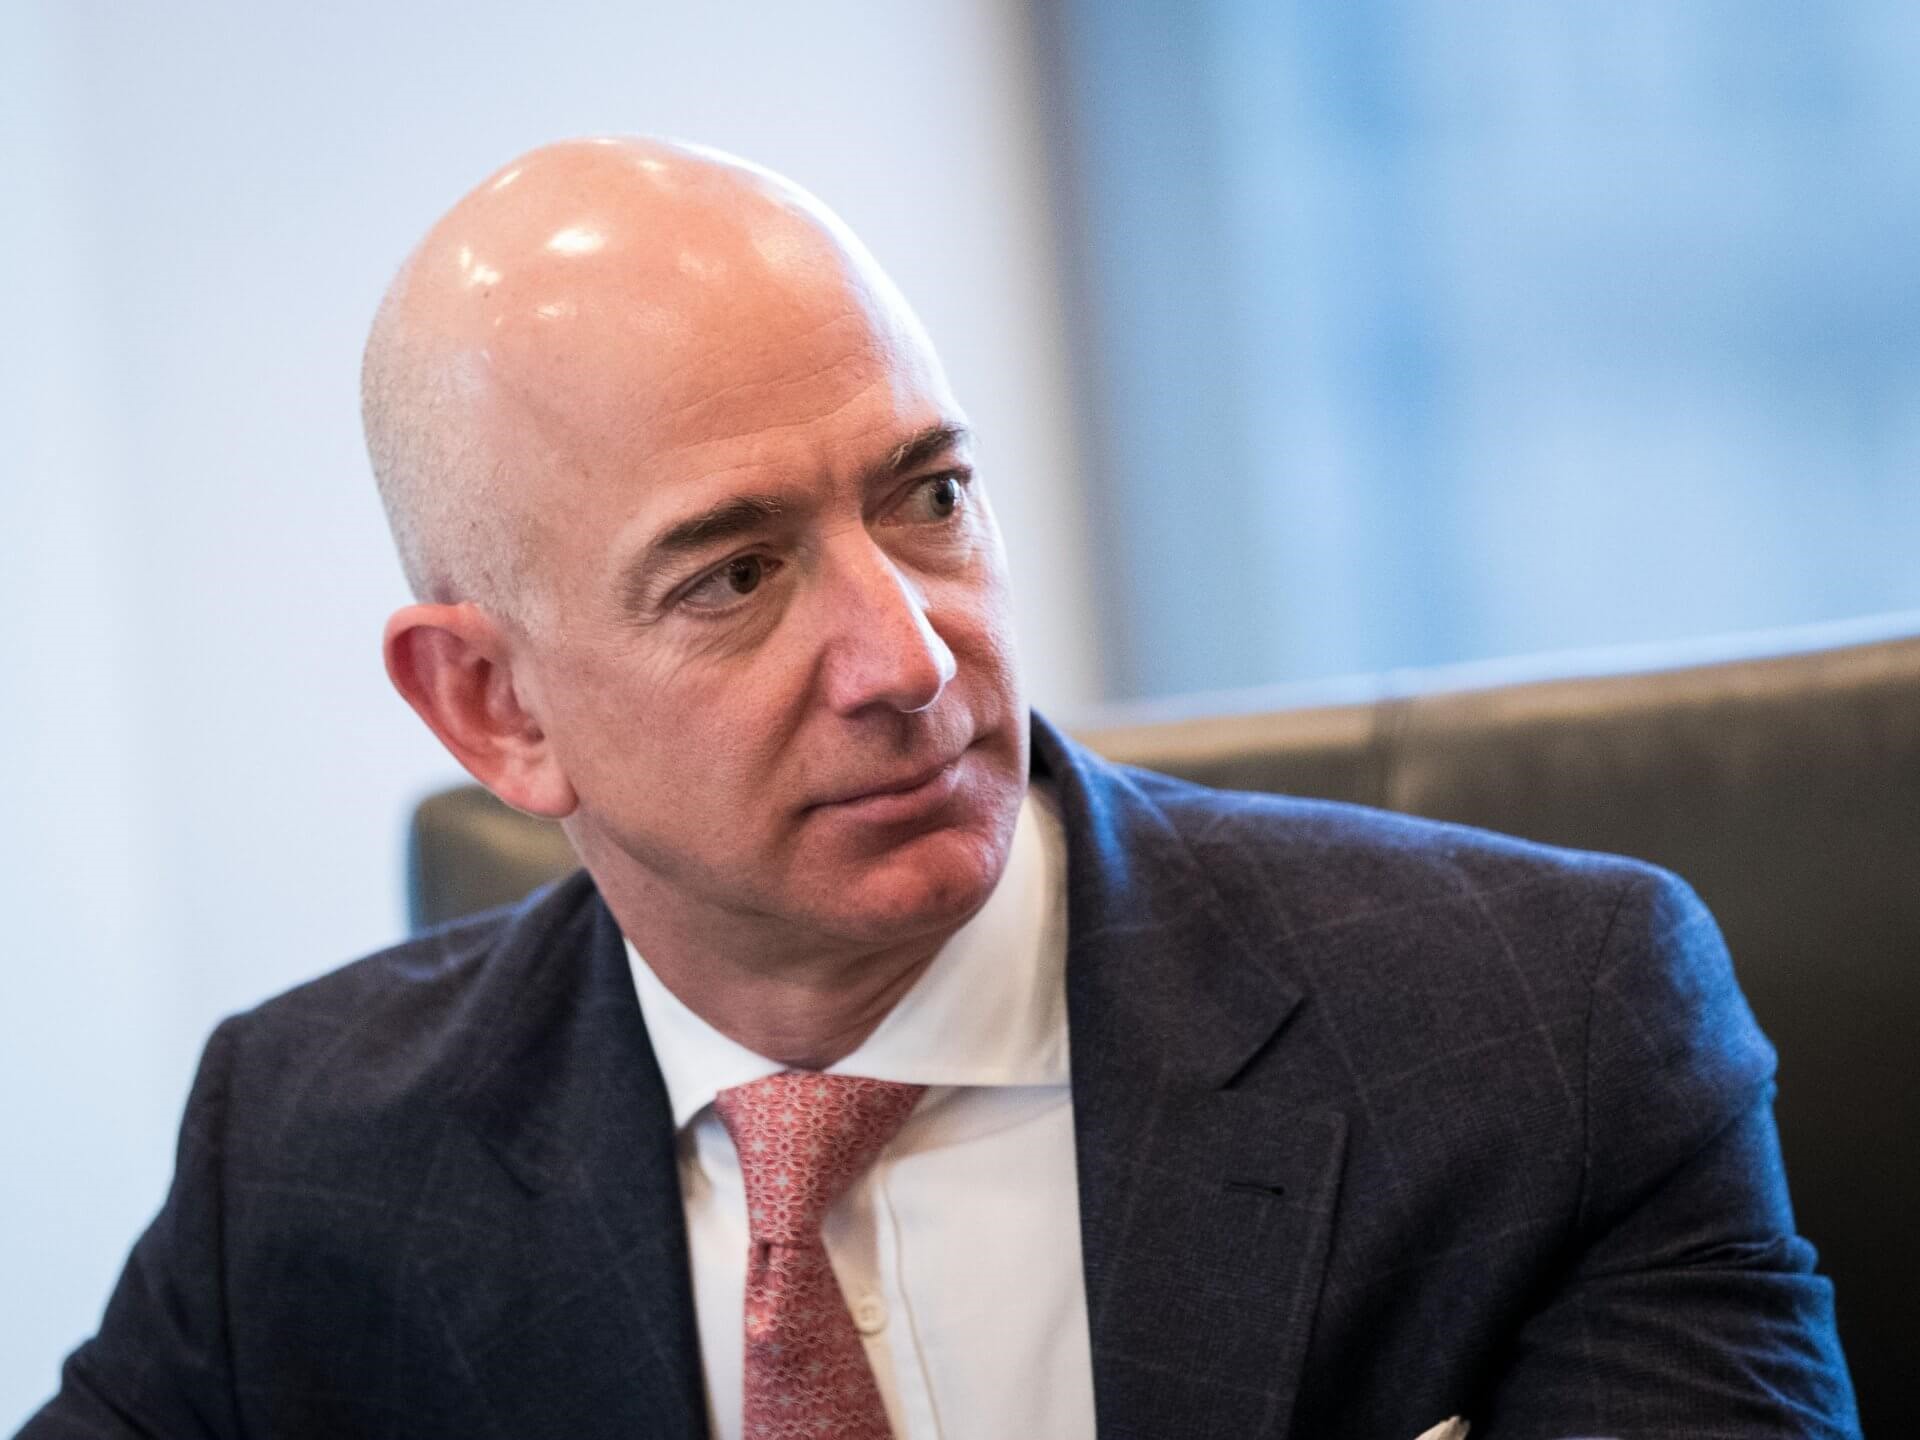 Jeff Bezos được biết đến là người đàn ông giàu nhất thế giới. Theo Forbes, tính đến ngày 27.2, ông chủ Amazon đang sở hữu khối tài sản lên đến 121,4 tỉ USD.